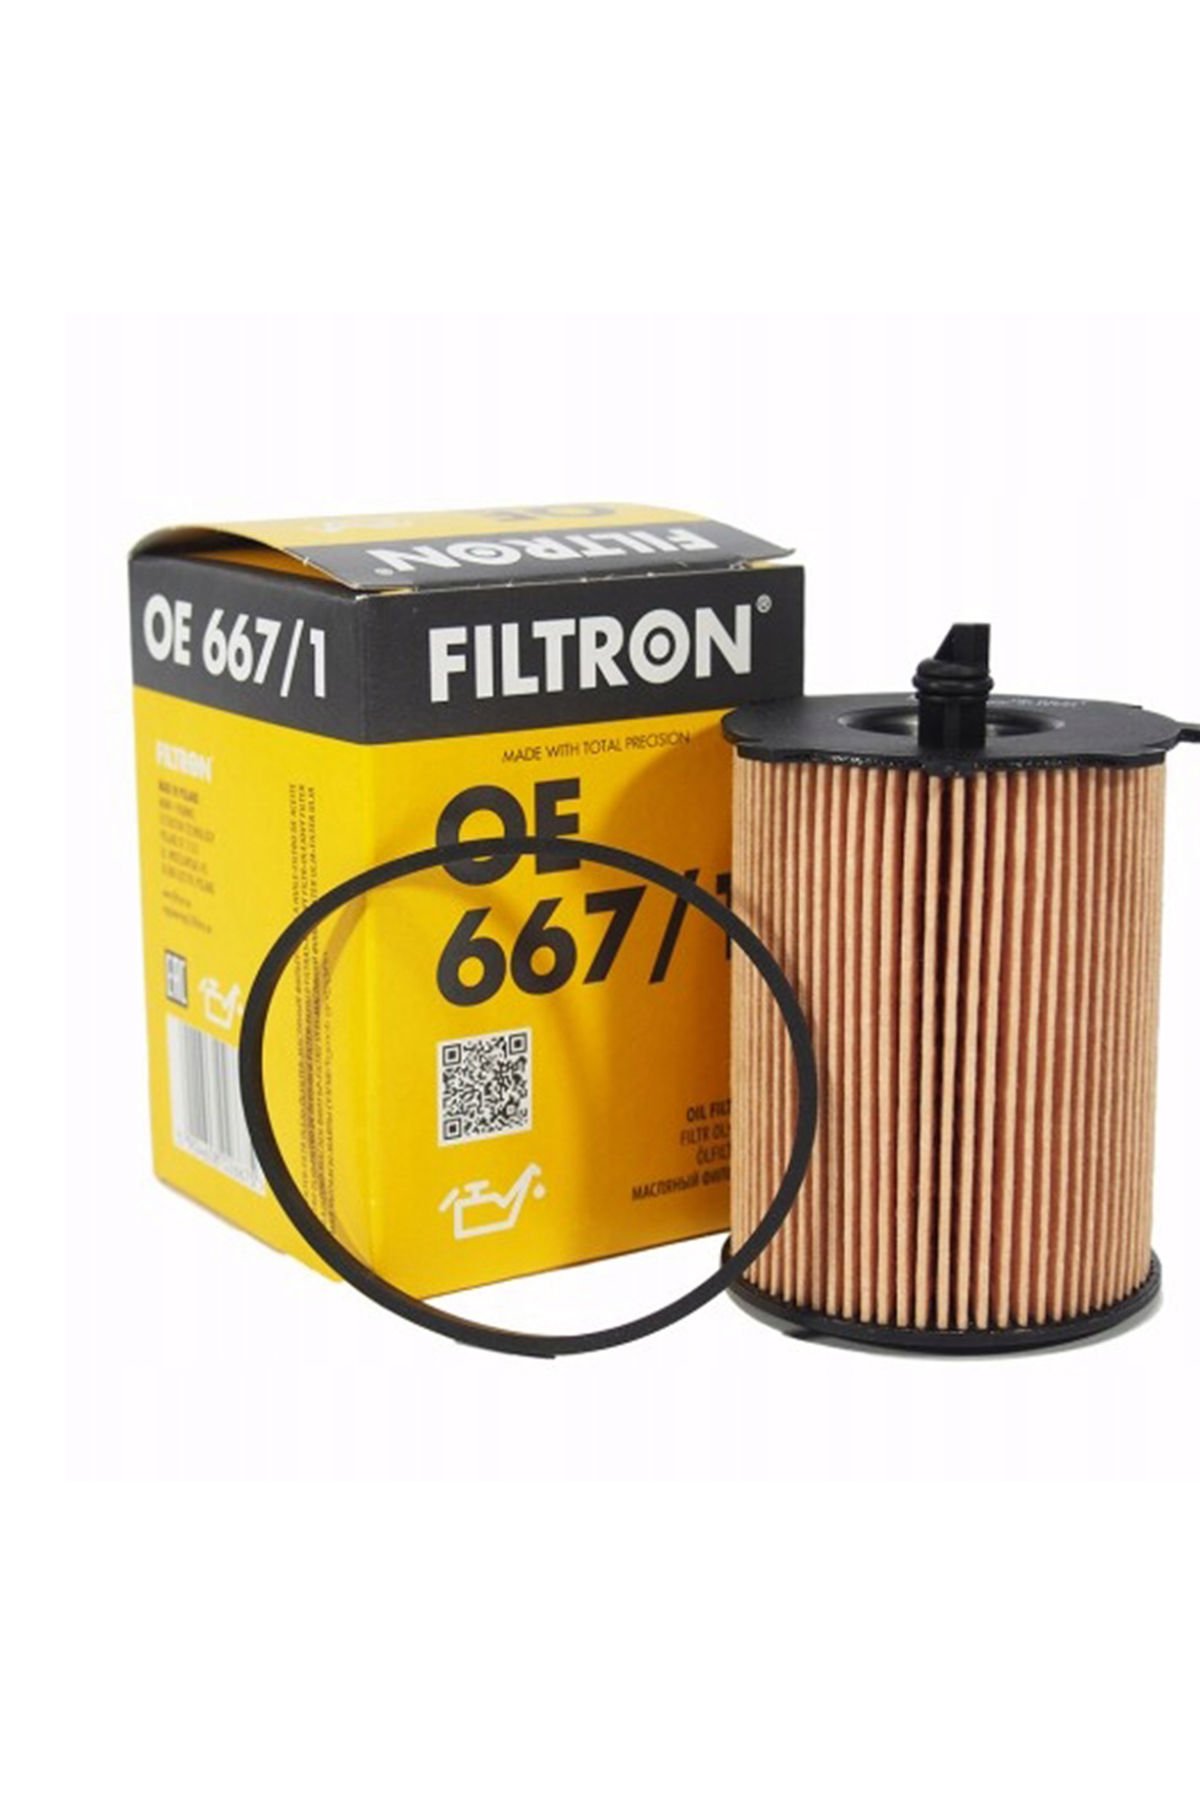 Citroen C5 1.6 HDI Dizel Yağ Filtresi 2005-2008 Filtron